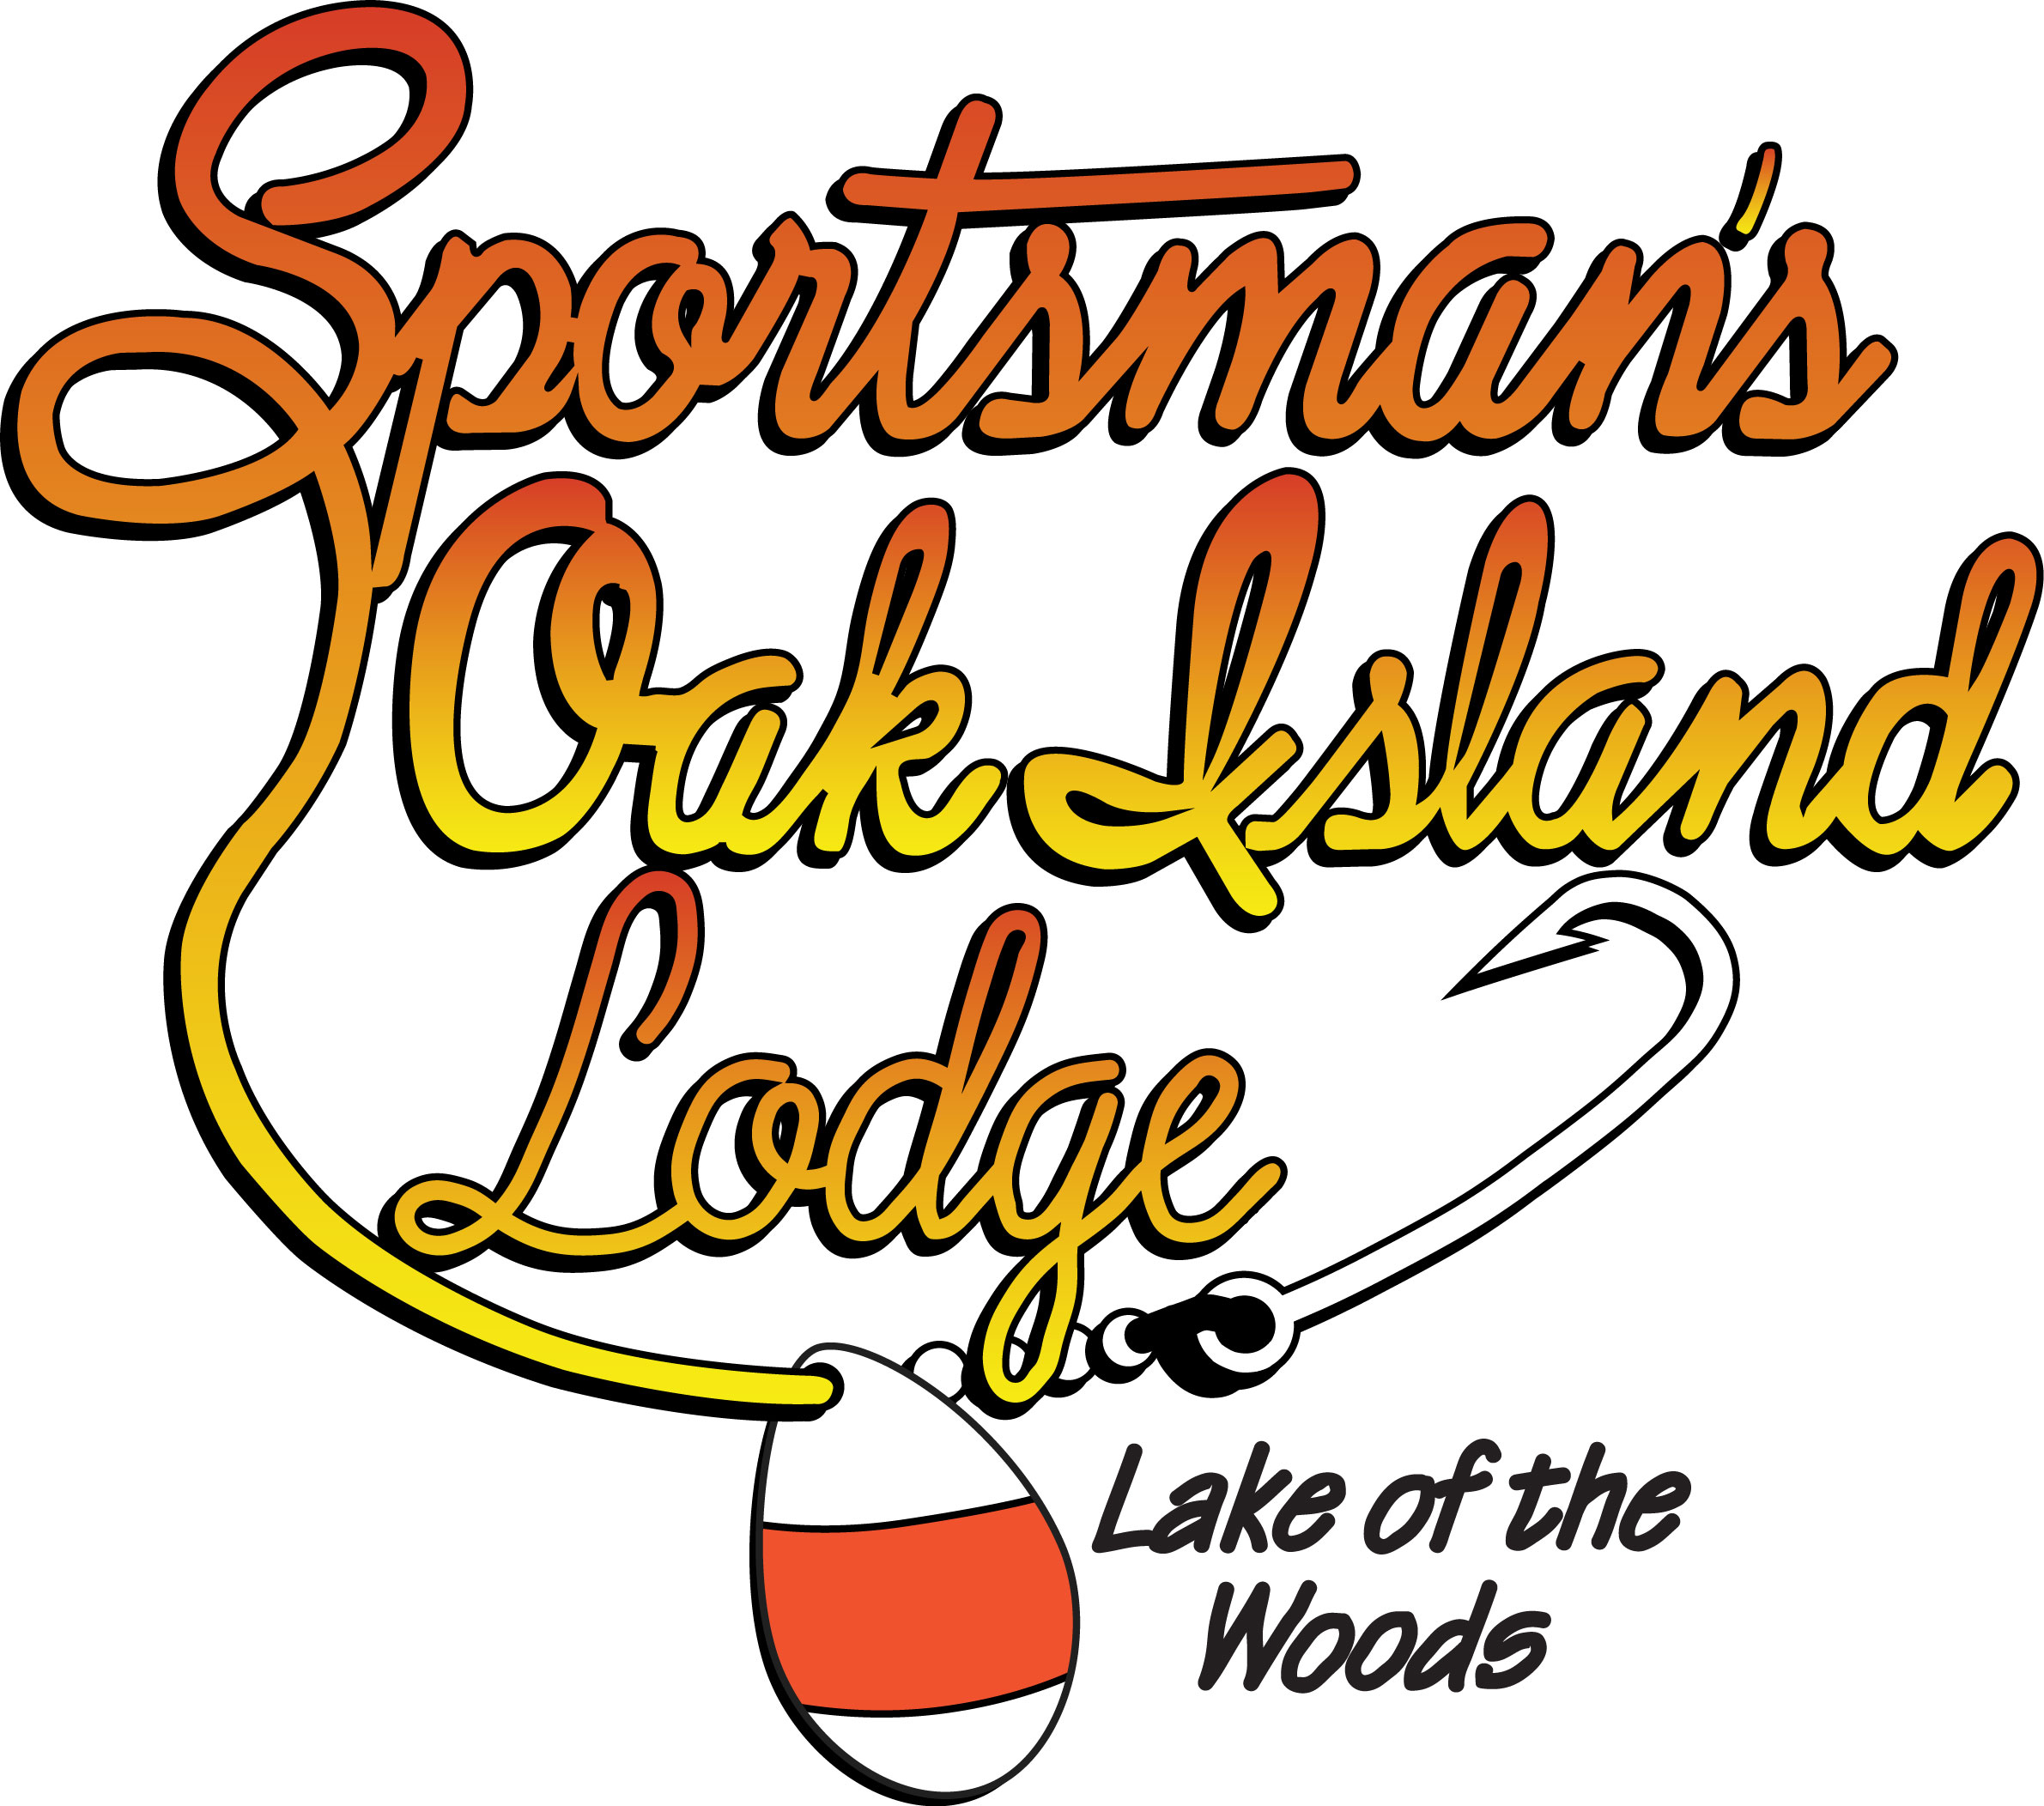 Sportsman's Oak Island Lodge logo